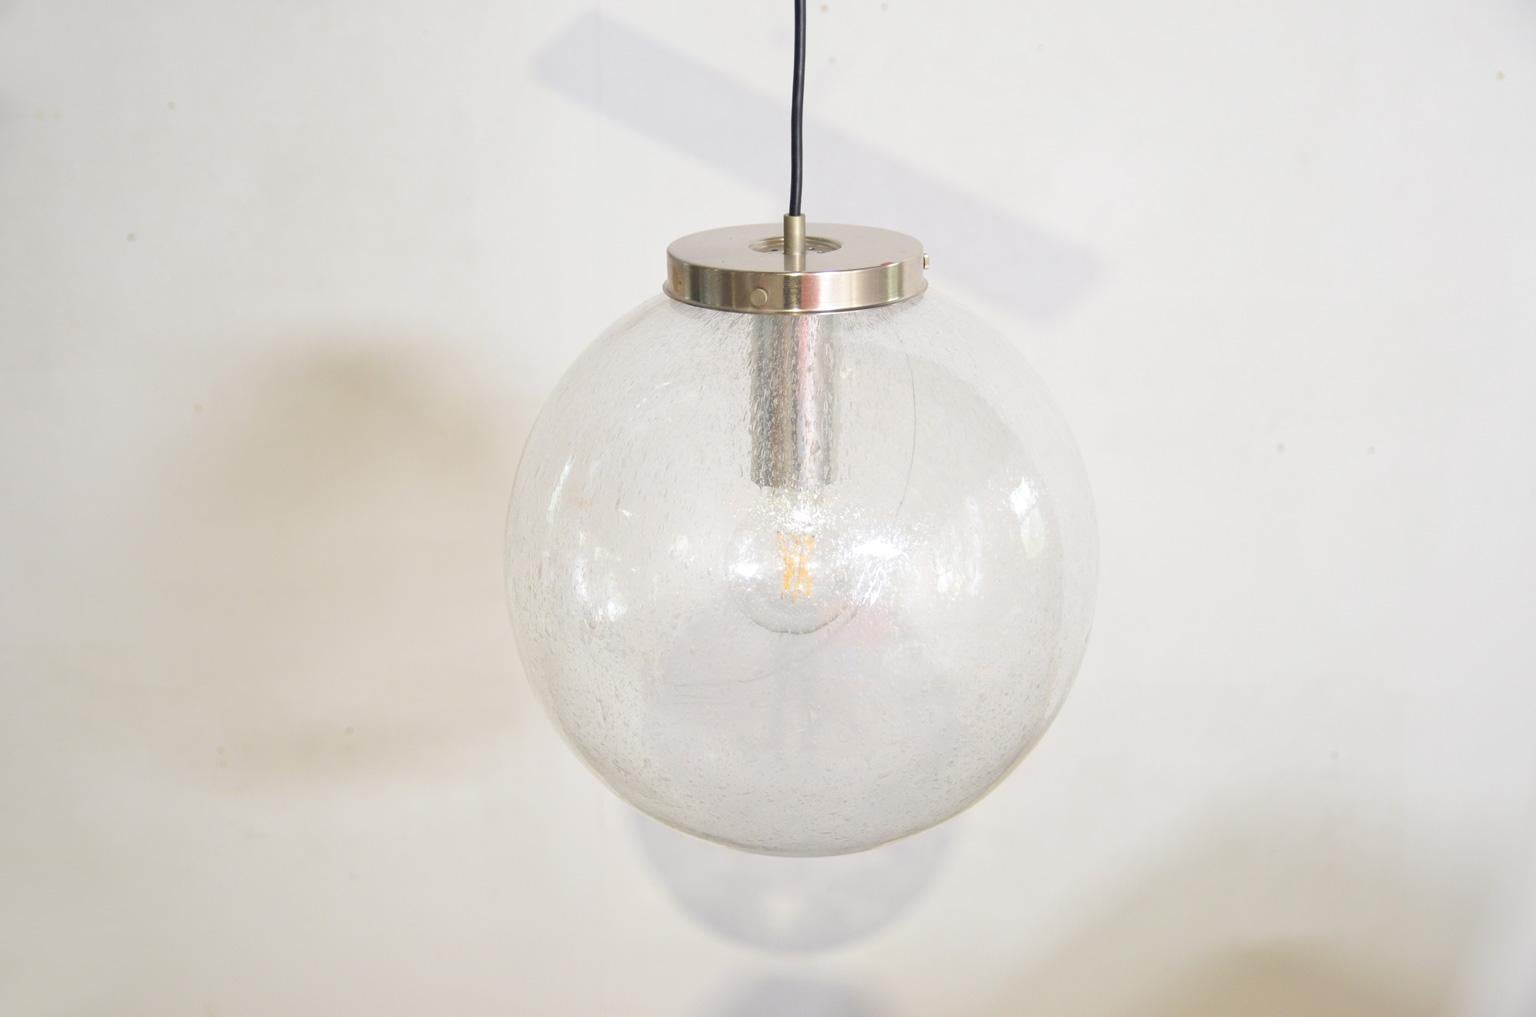 Die mundgeblasene Kugel mit einem Durchmesser von 40 cm verbreitet aufgrund der Struktur des mundgeblasenen Glases ein wunderschön schimmerndes Licht. Die Lampe ist mit einem Doria-Aufkleber versehen und nummeriert (1283). Die Lampe verwendet eine